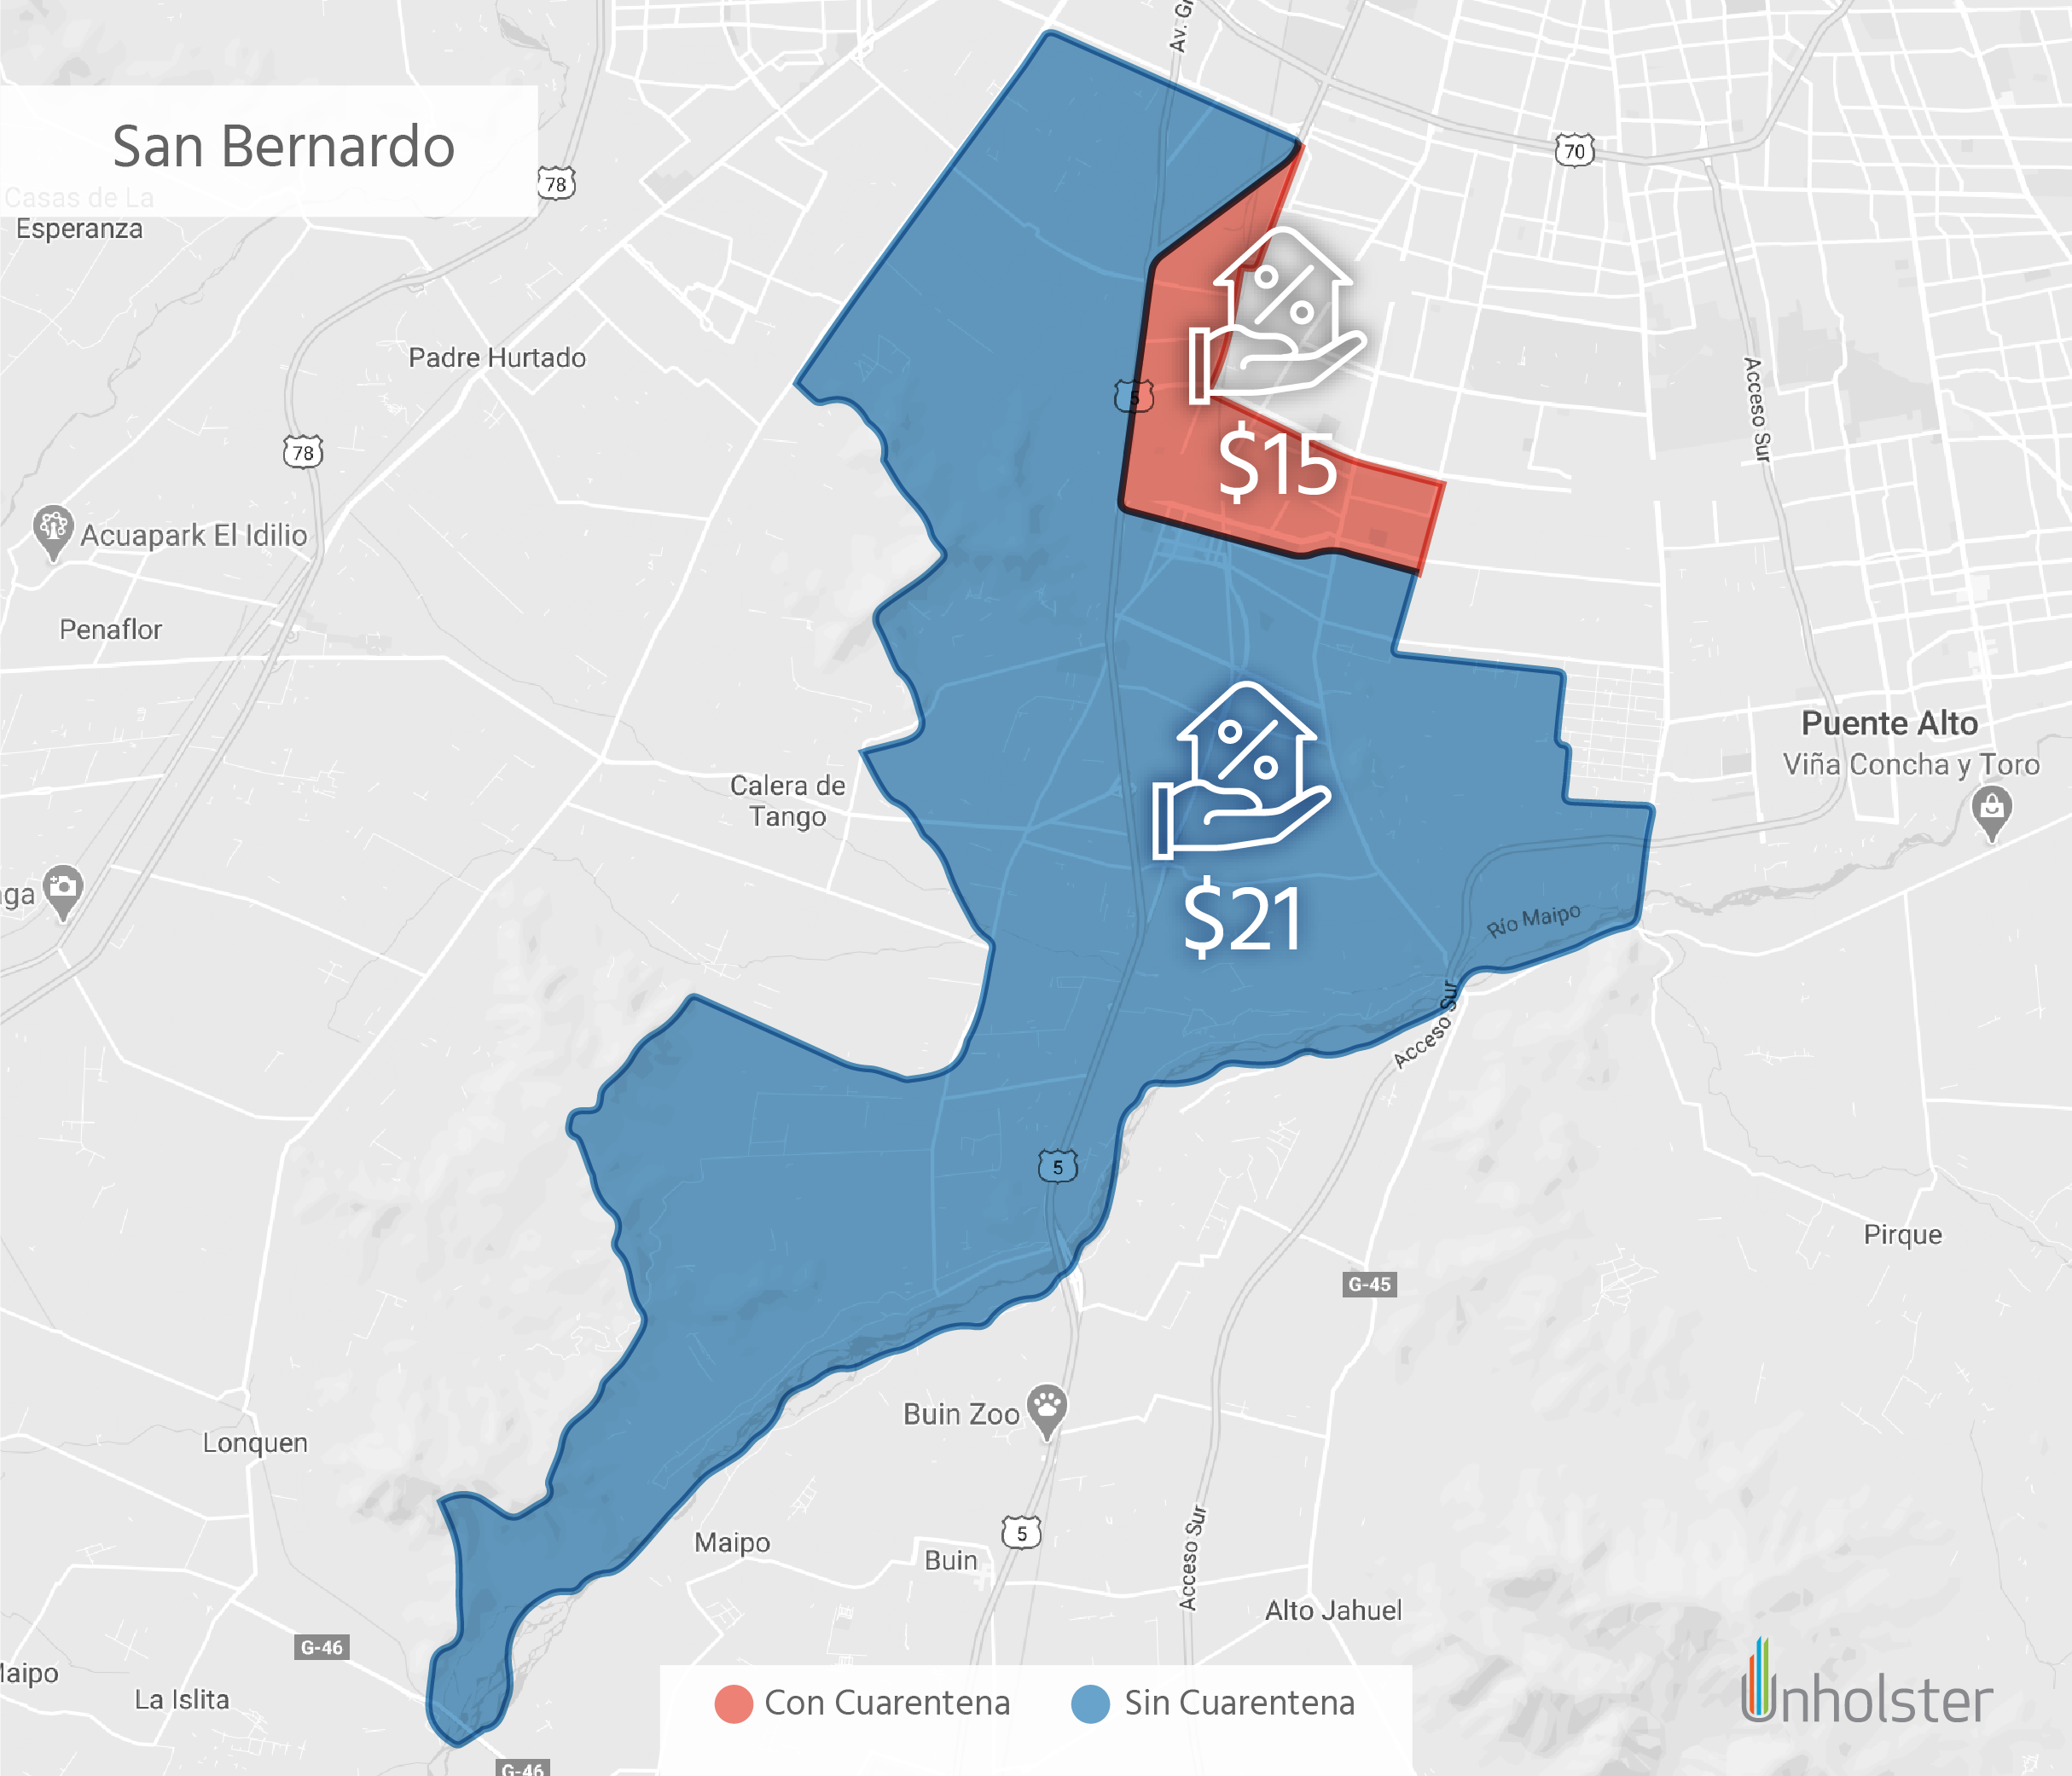 Mapa de San Bernardo con cuarentena parcial. Créditos: Unholster